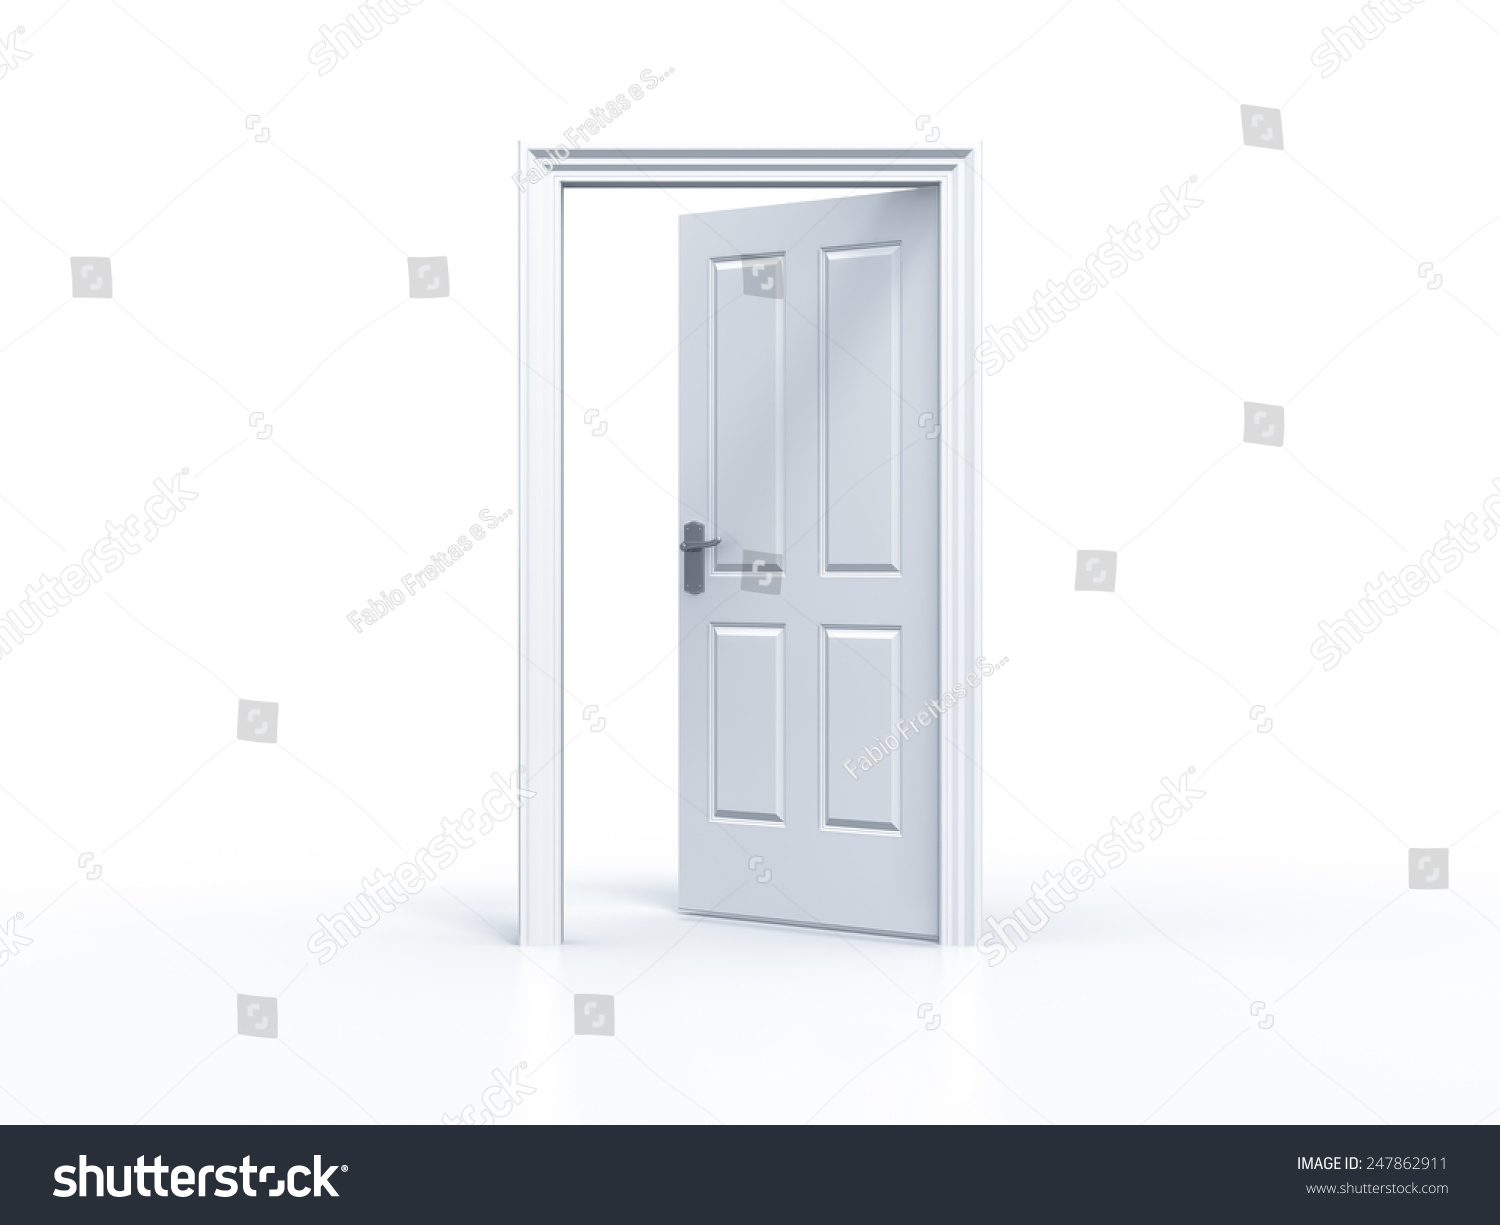 Opened Door White Background Stock Illustration 247862911 - Shutterstock